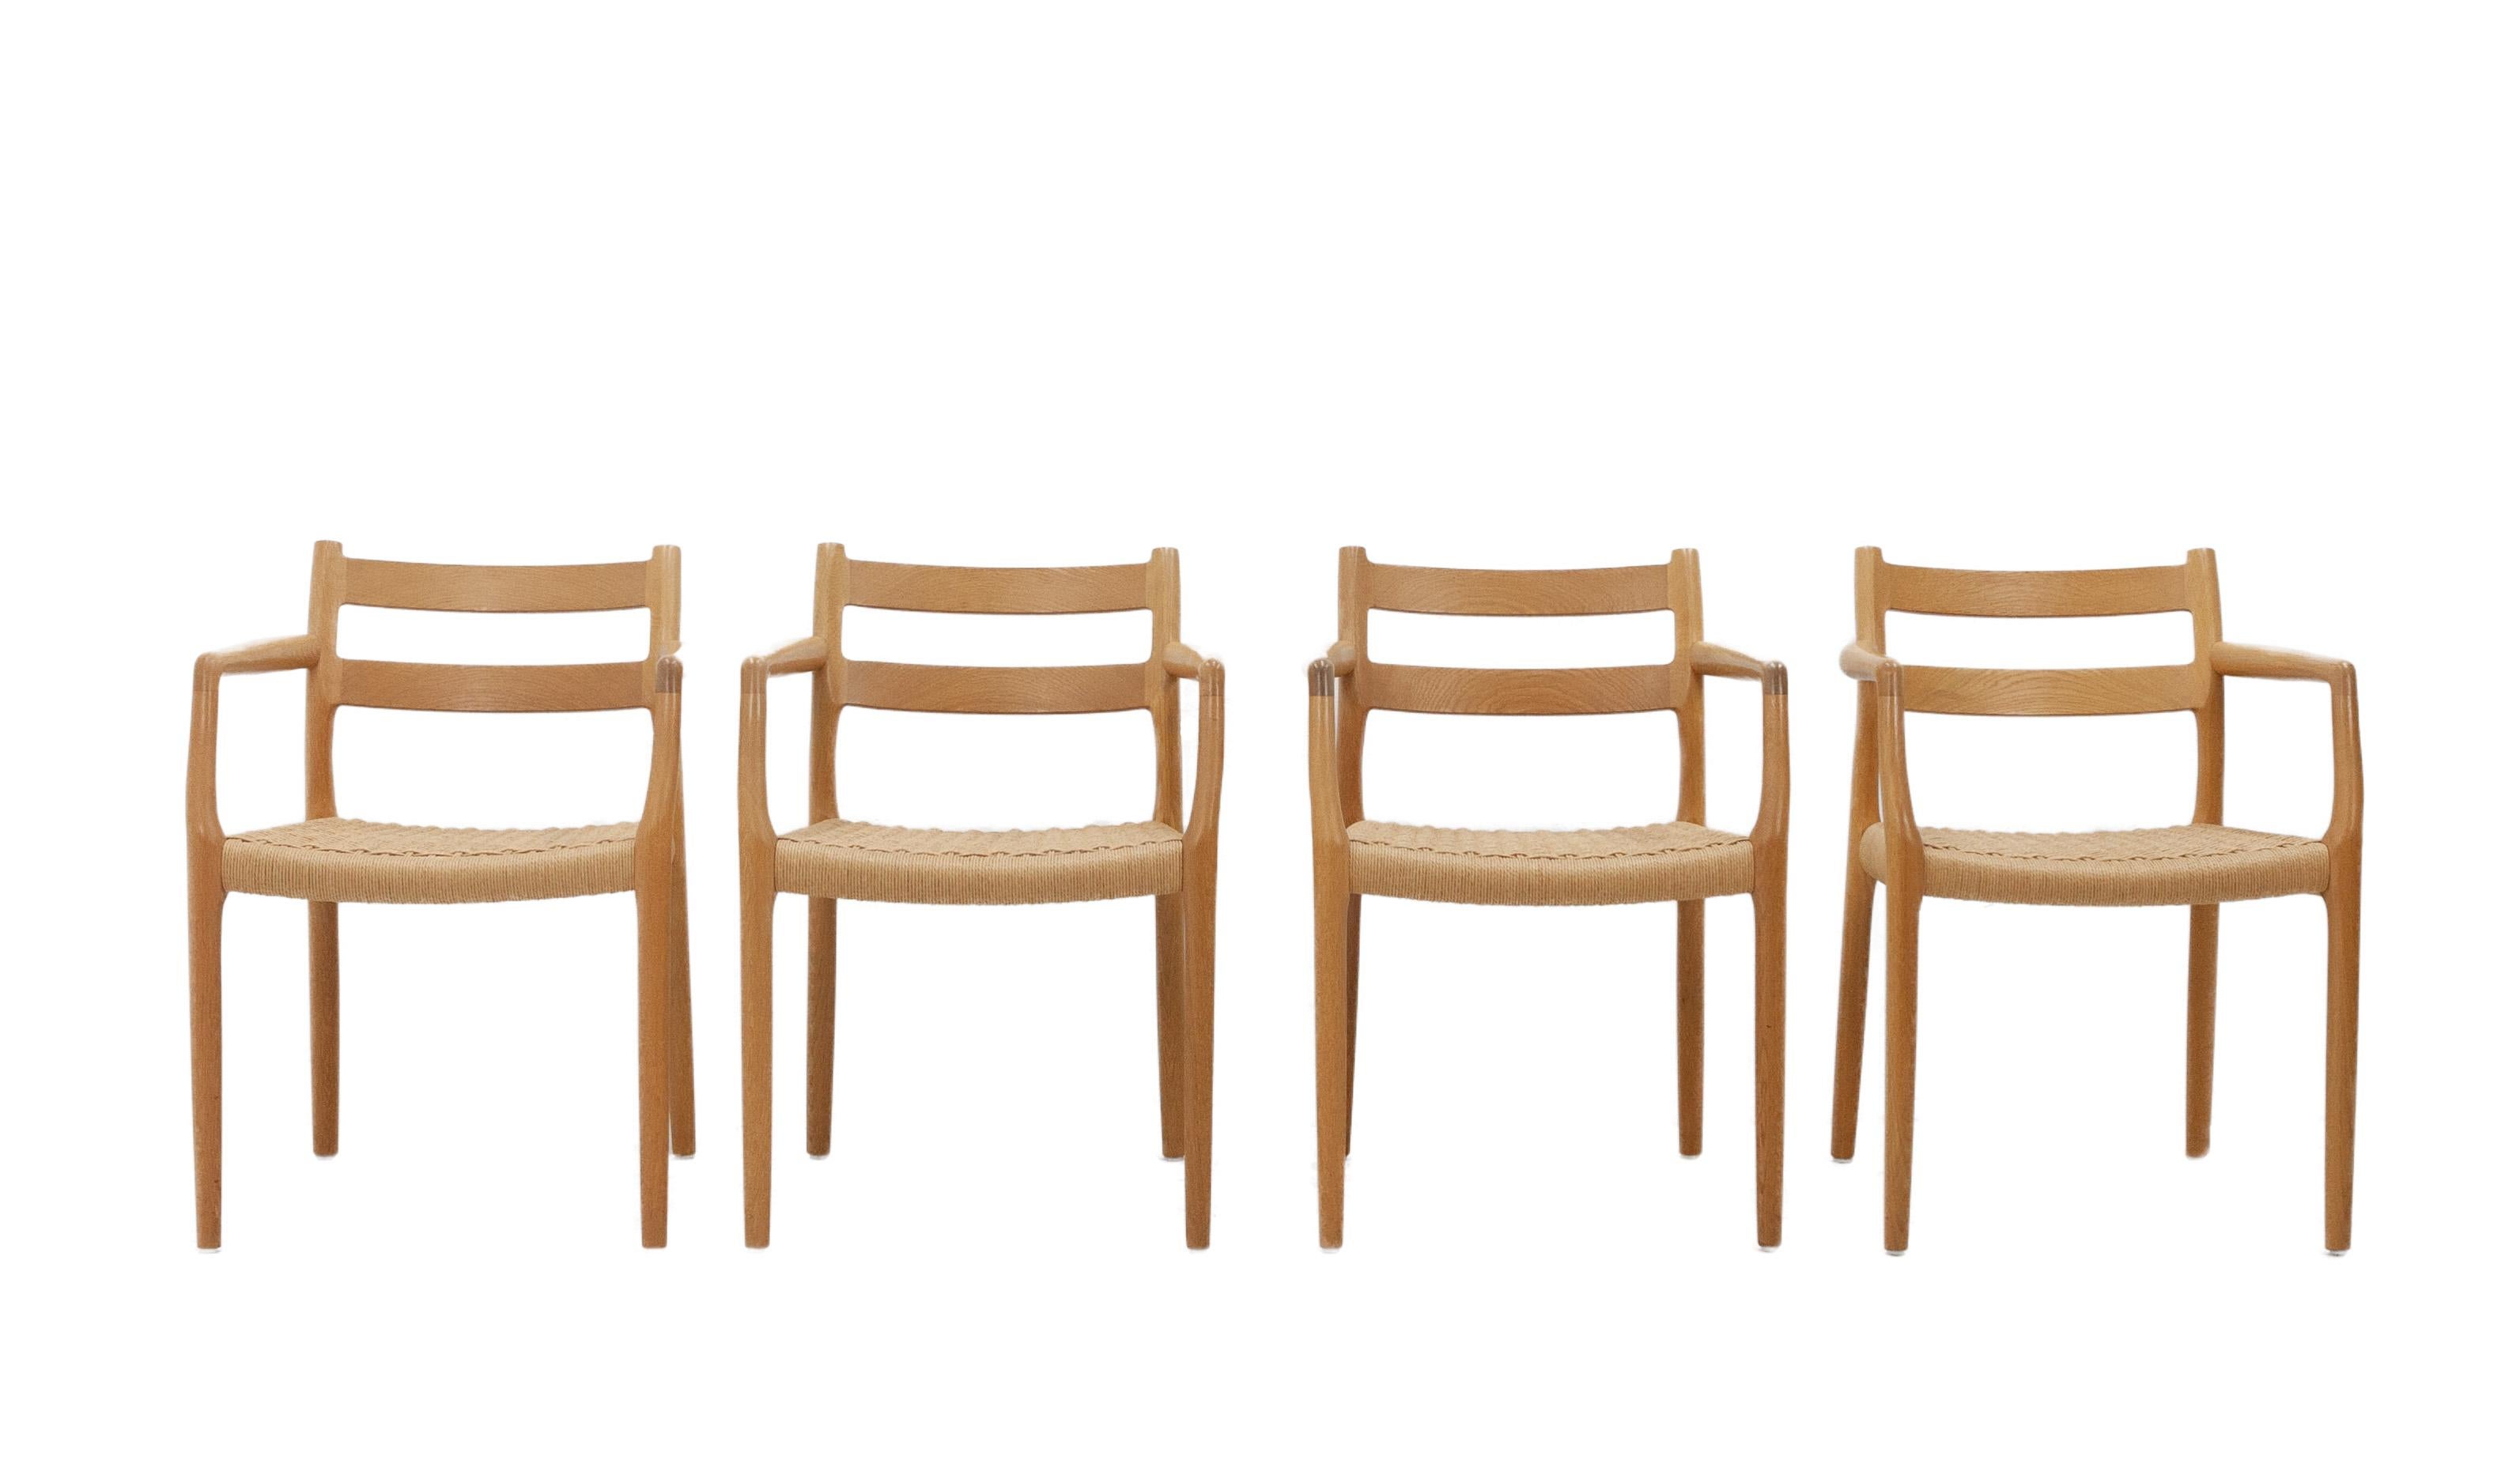 Vier Niels Moller-Stühle Modell 67:: entworfen von Niels Otto Moller für J.L. Moller:: 1970er Jahre. Diese Stühle sind eines der Wahrzeichen der Firma J.L. Moller. Sie zeichnen sich durch zwei geschwungene Stützleisten über der Rückenlehne:: anmutig